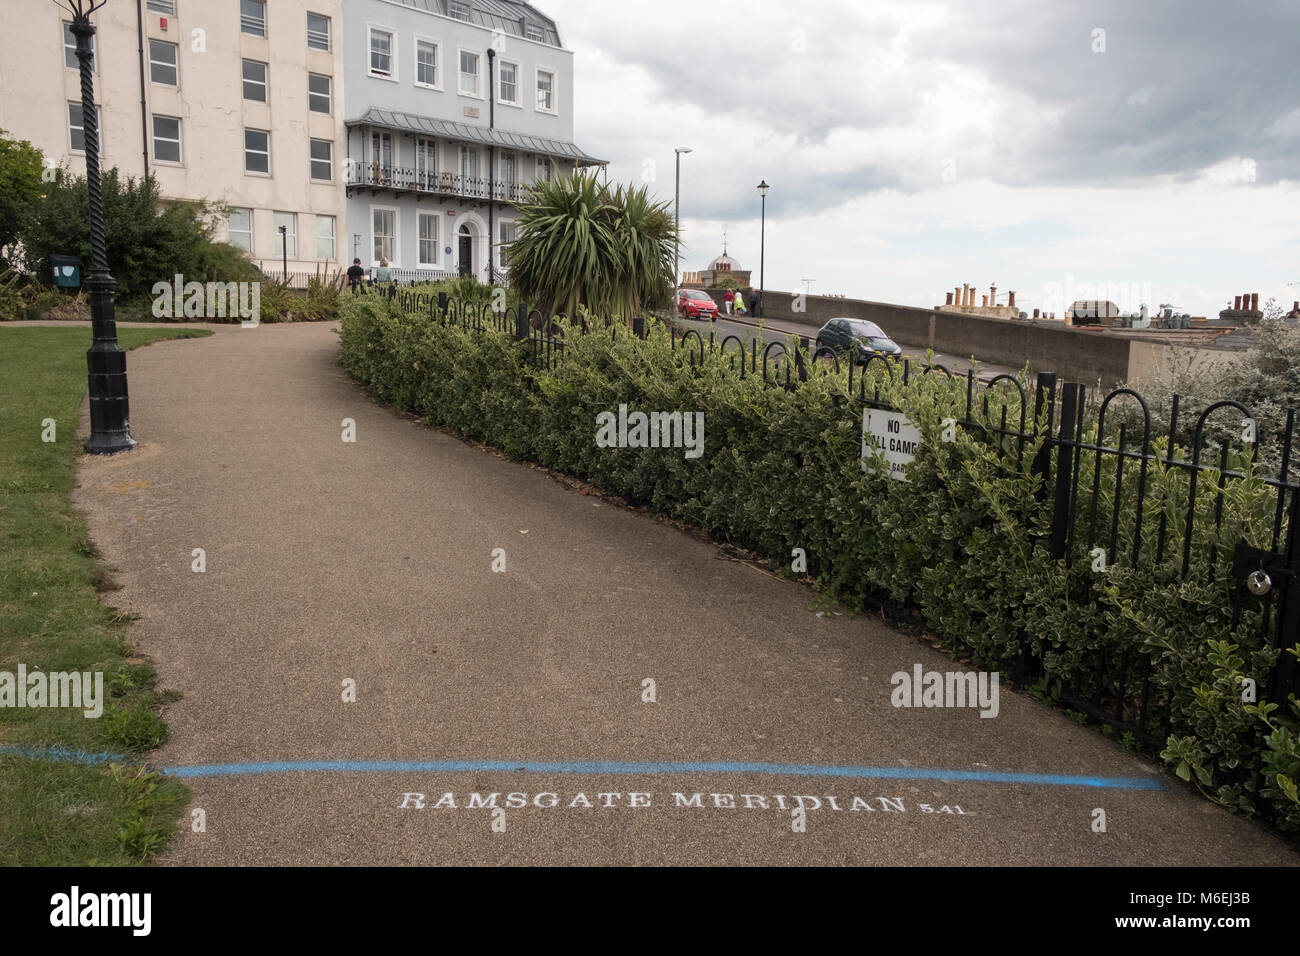 Per il 2017 Ramsgate Festival artista Theresa Smith, celebra la città ha la sua propria linea meridiana - 5 minuti e 41 secondi avanti rispetto al meridiano di Greenwich. Foto Stock